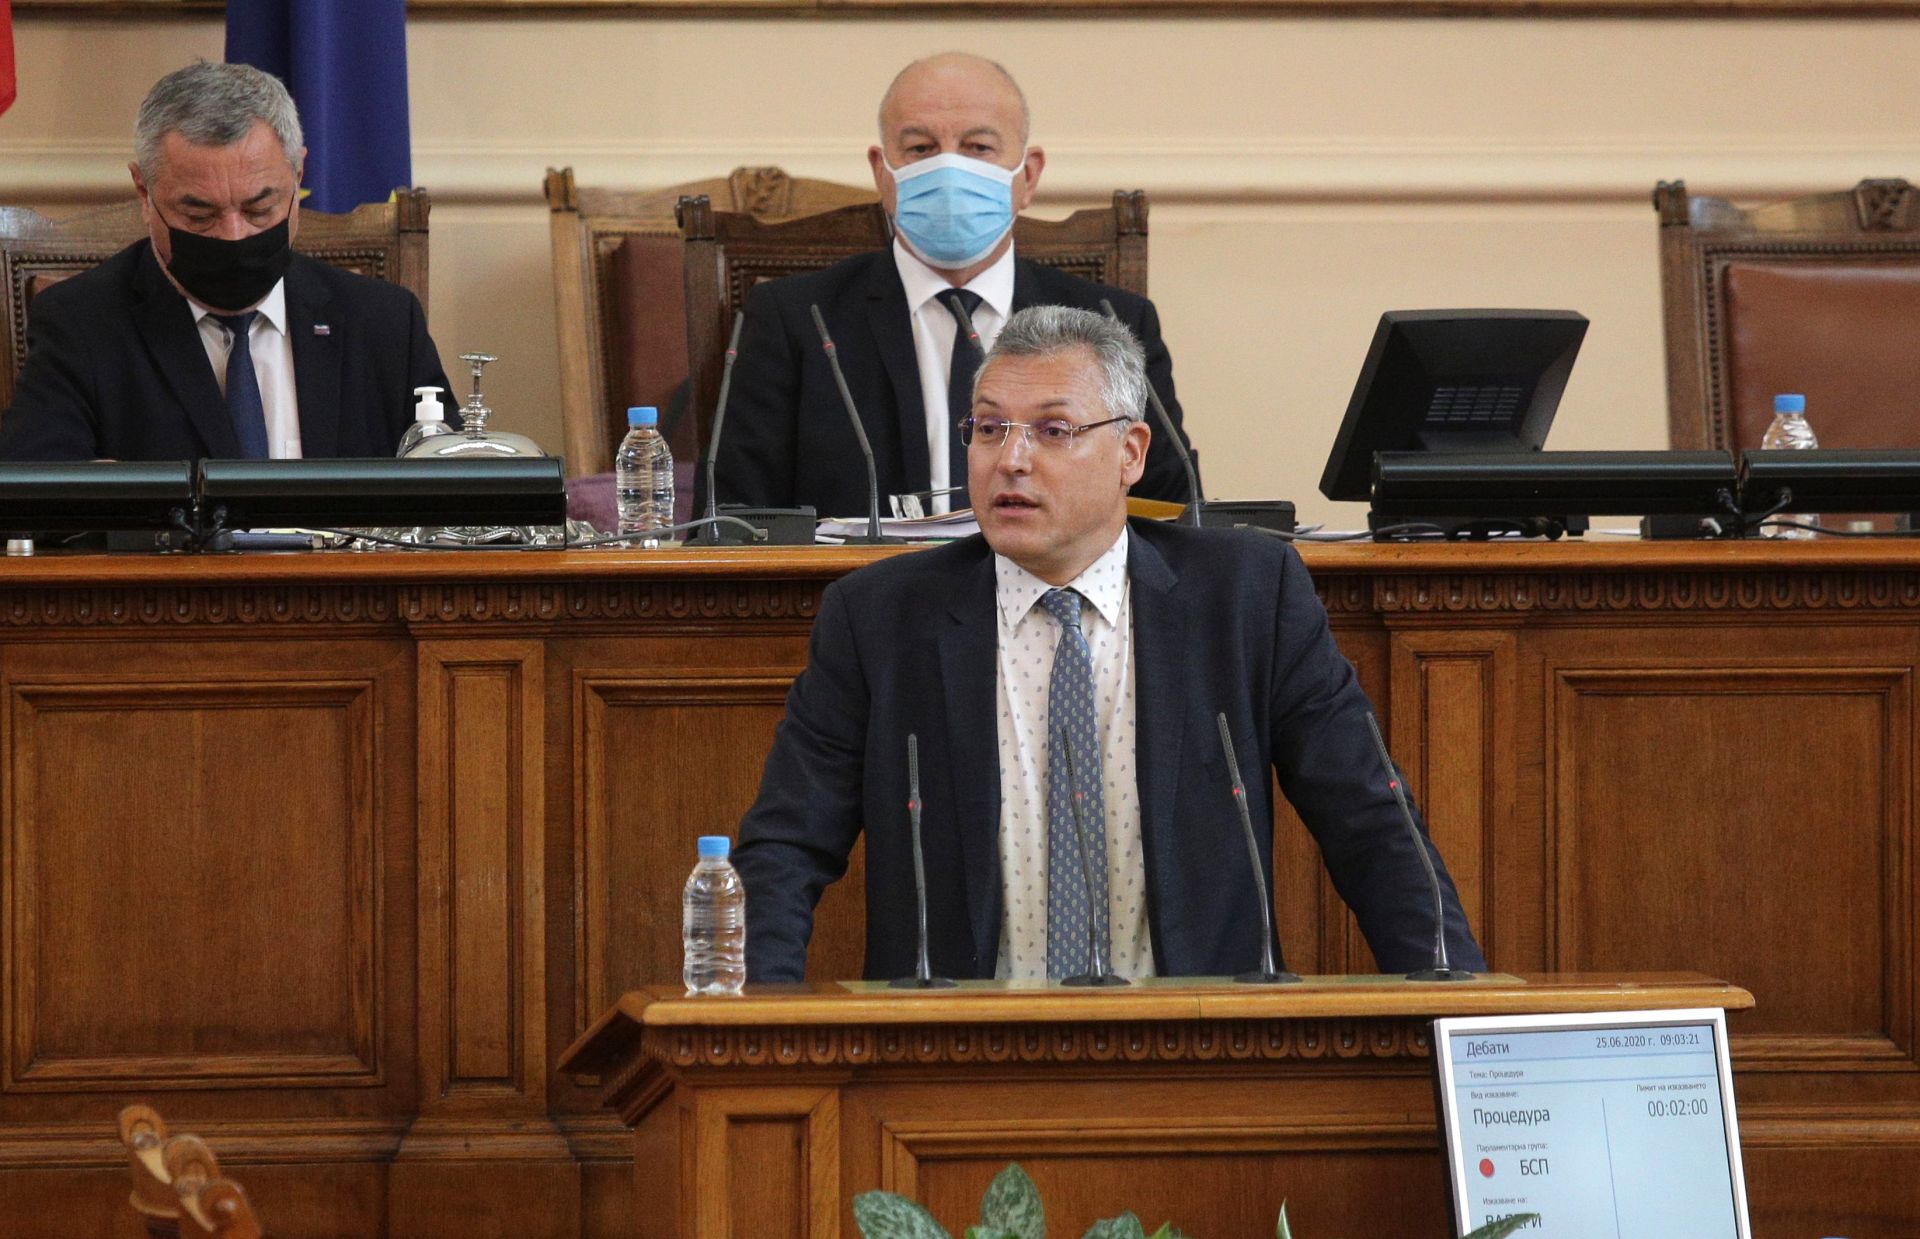 Валери Жеблянов се оплака от "медиен тормоз" заради излъчените кадри на депутати без маски в пленарна зала